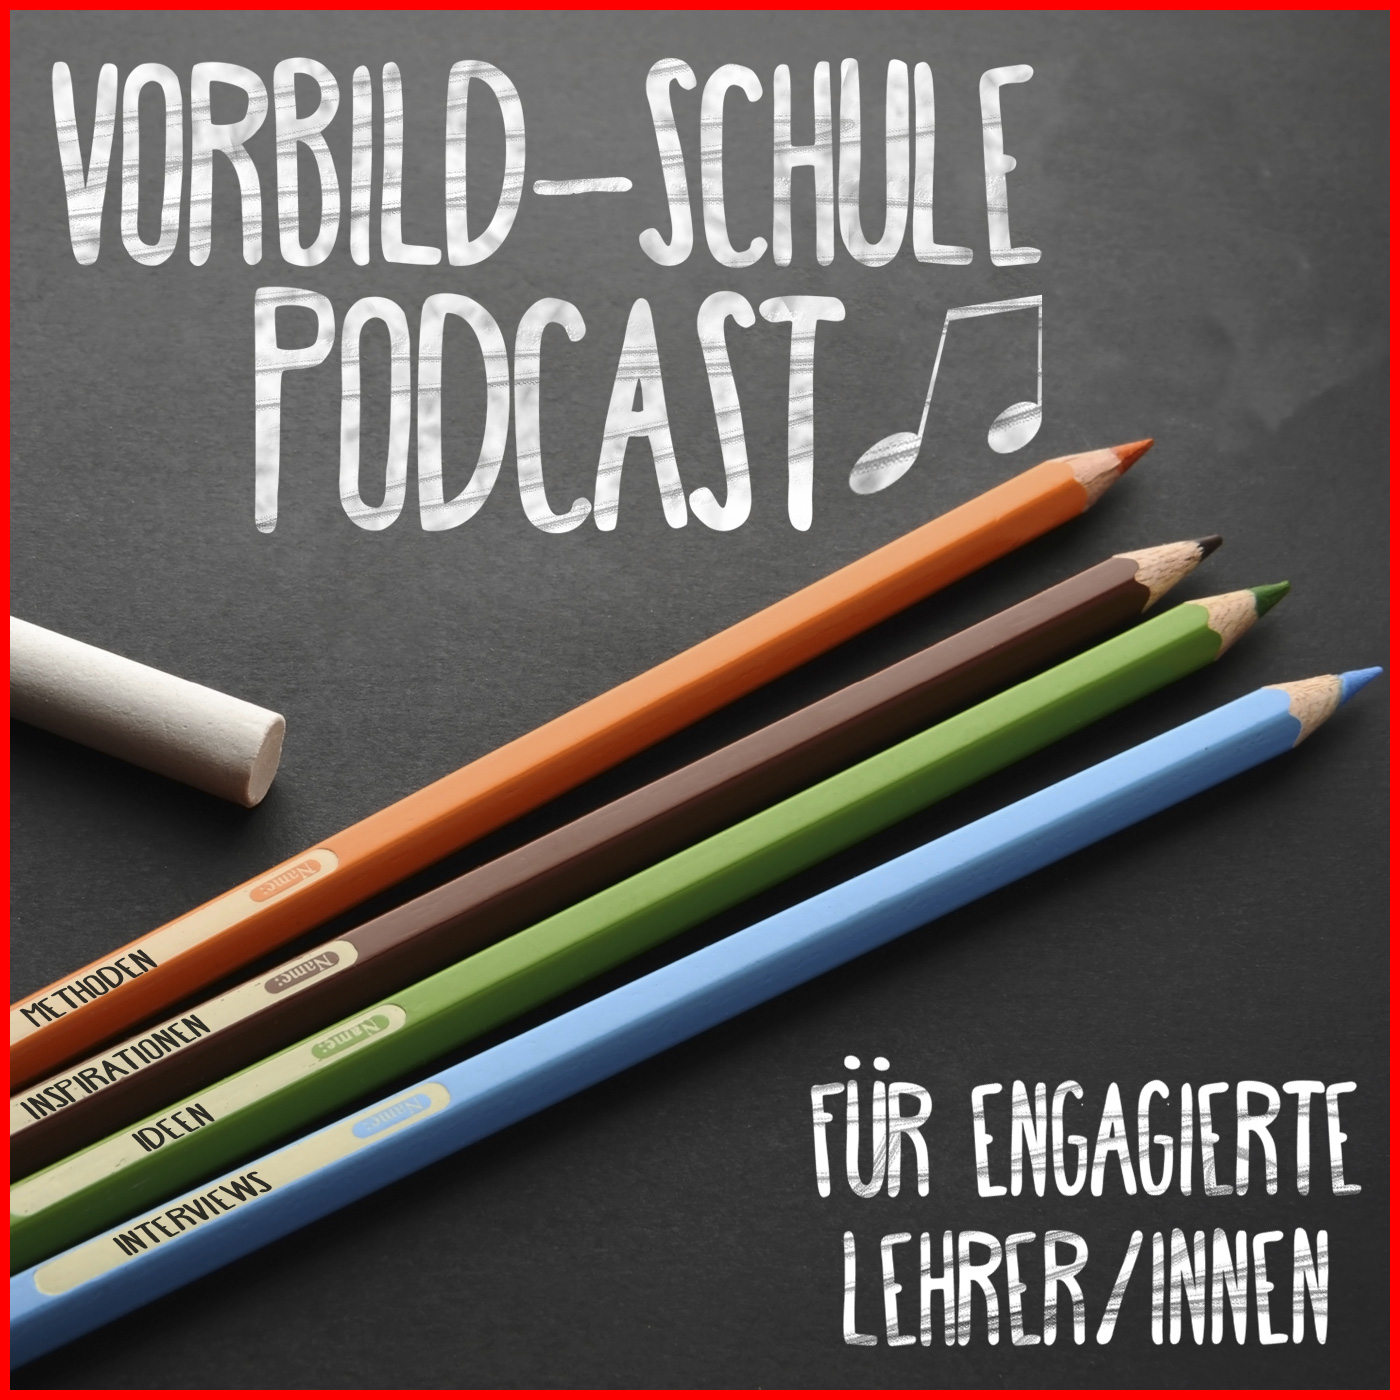 Der Vorbild-Schule Podcast